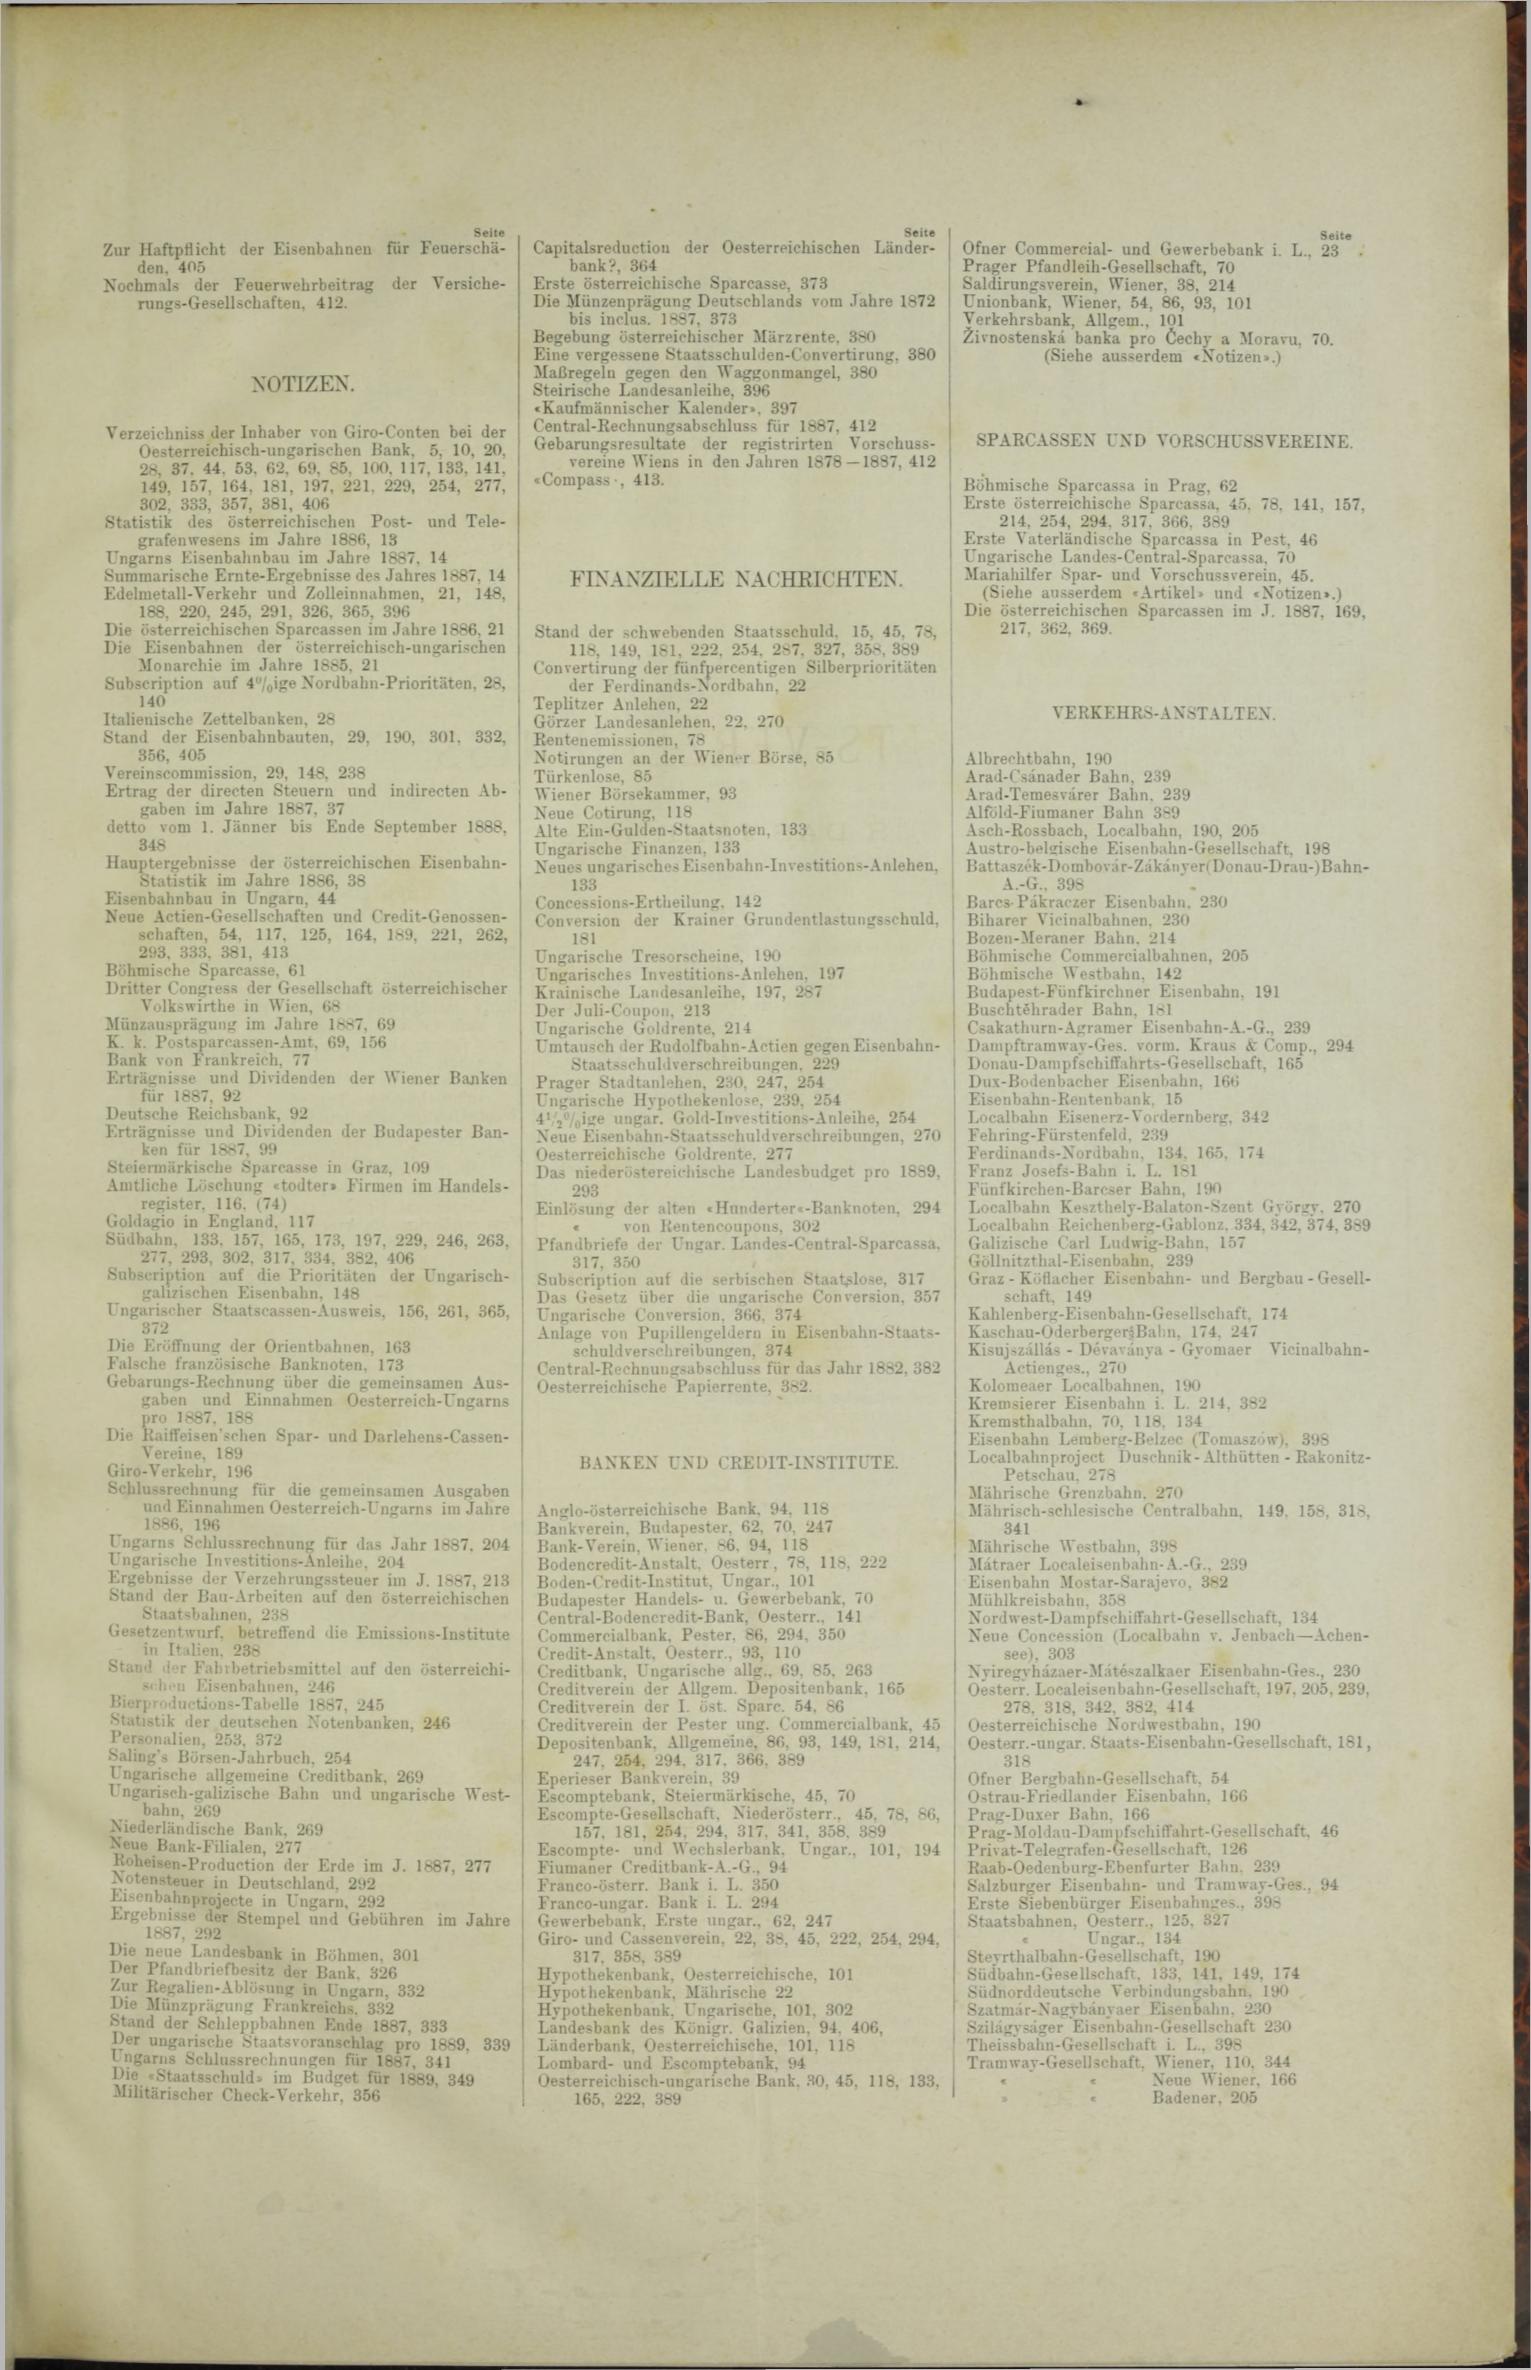 Der Tresor 02.02.1888 - Seite 11